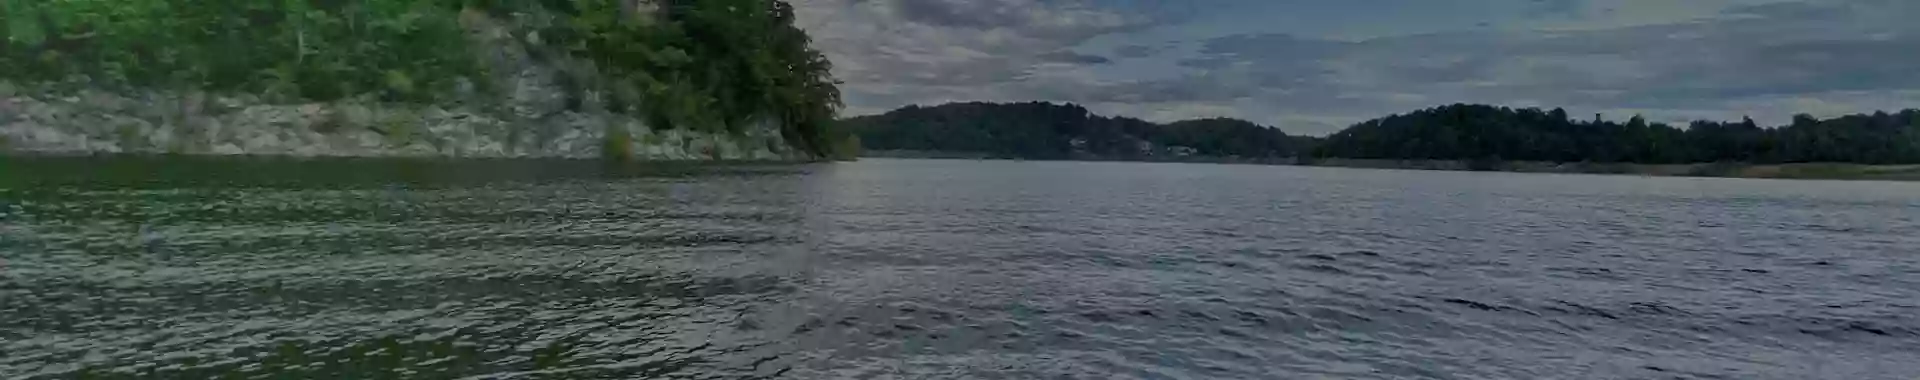 Carefree Boat Club - Boone Lake